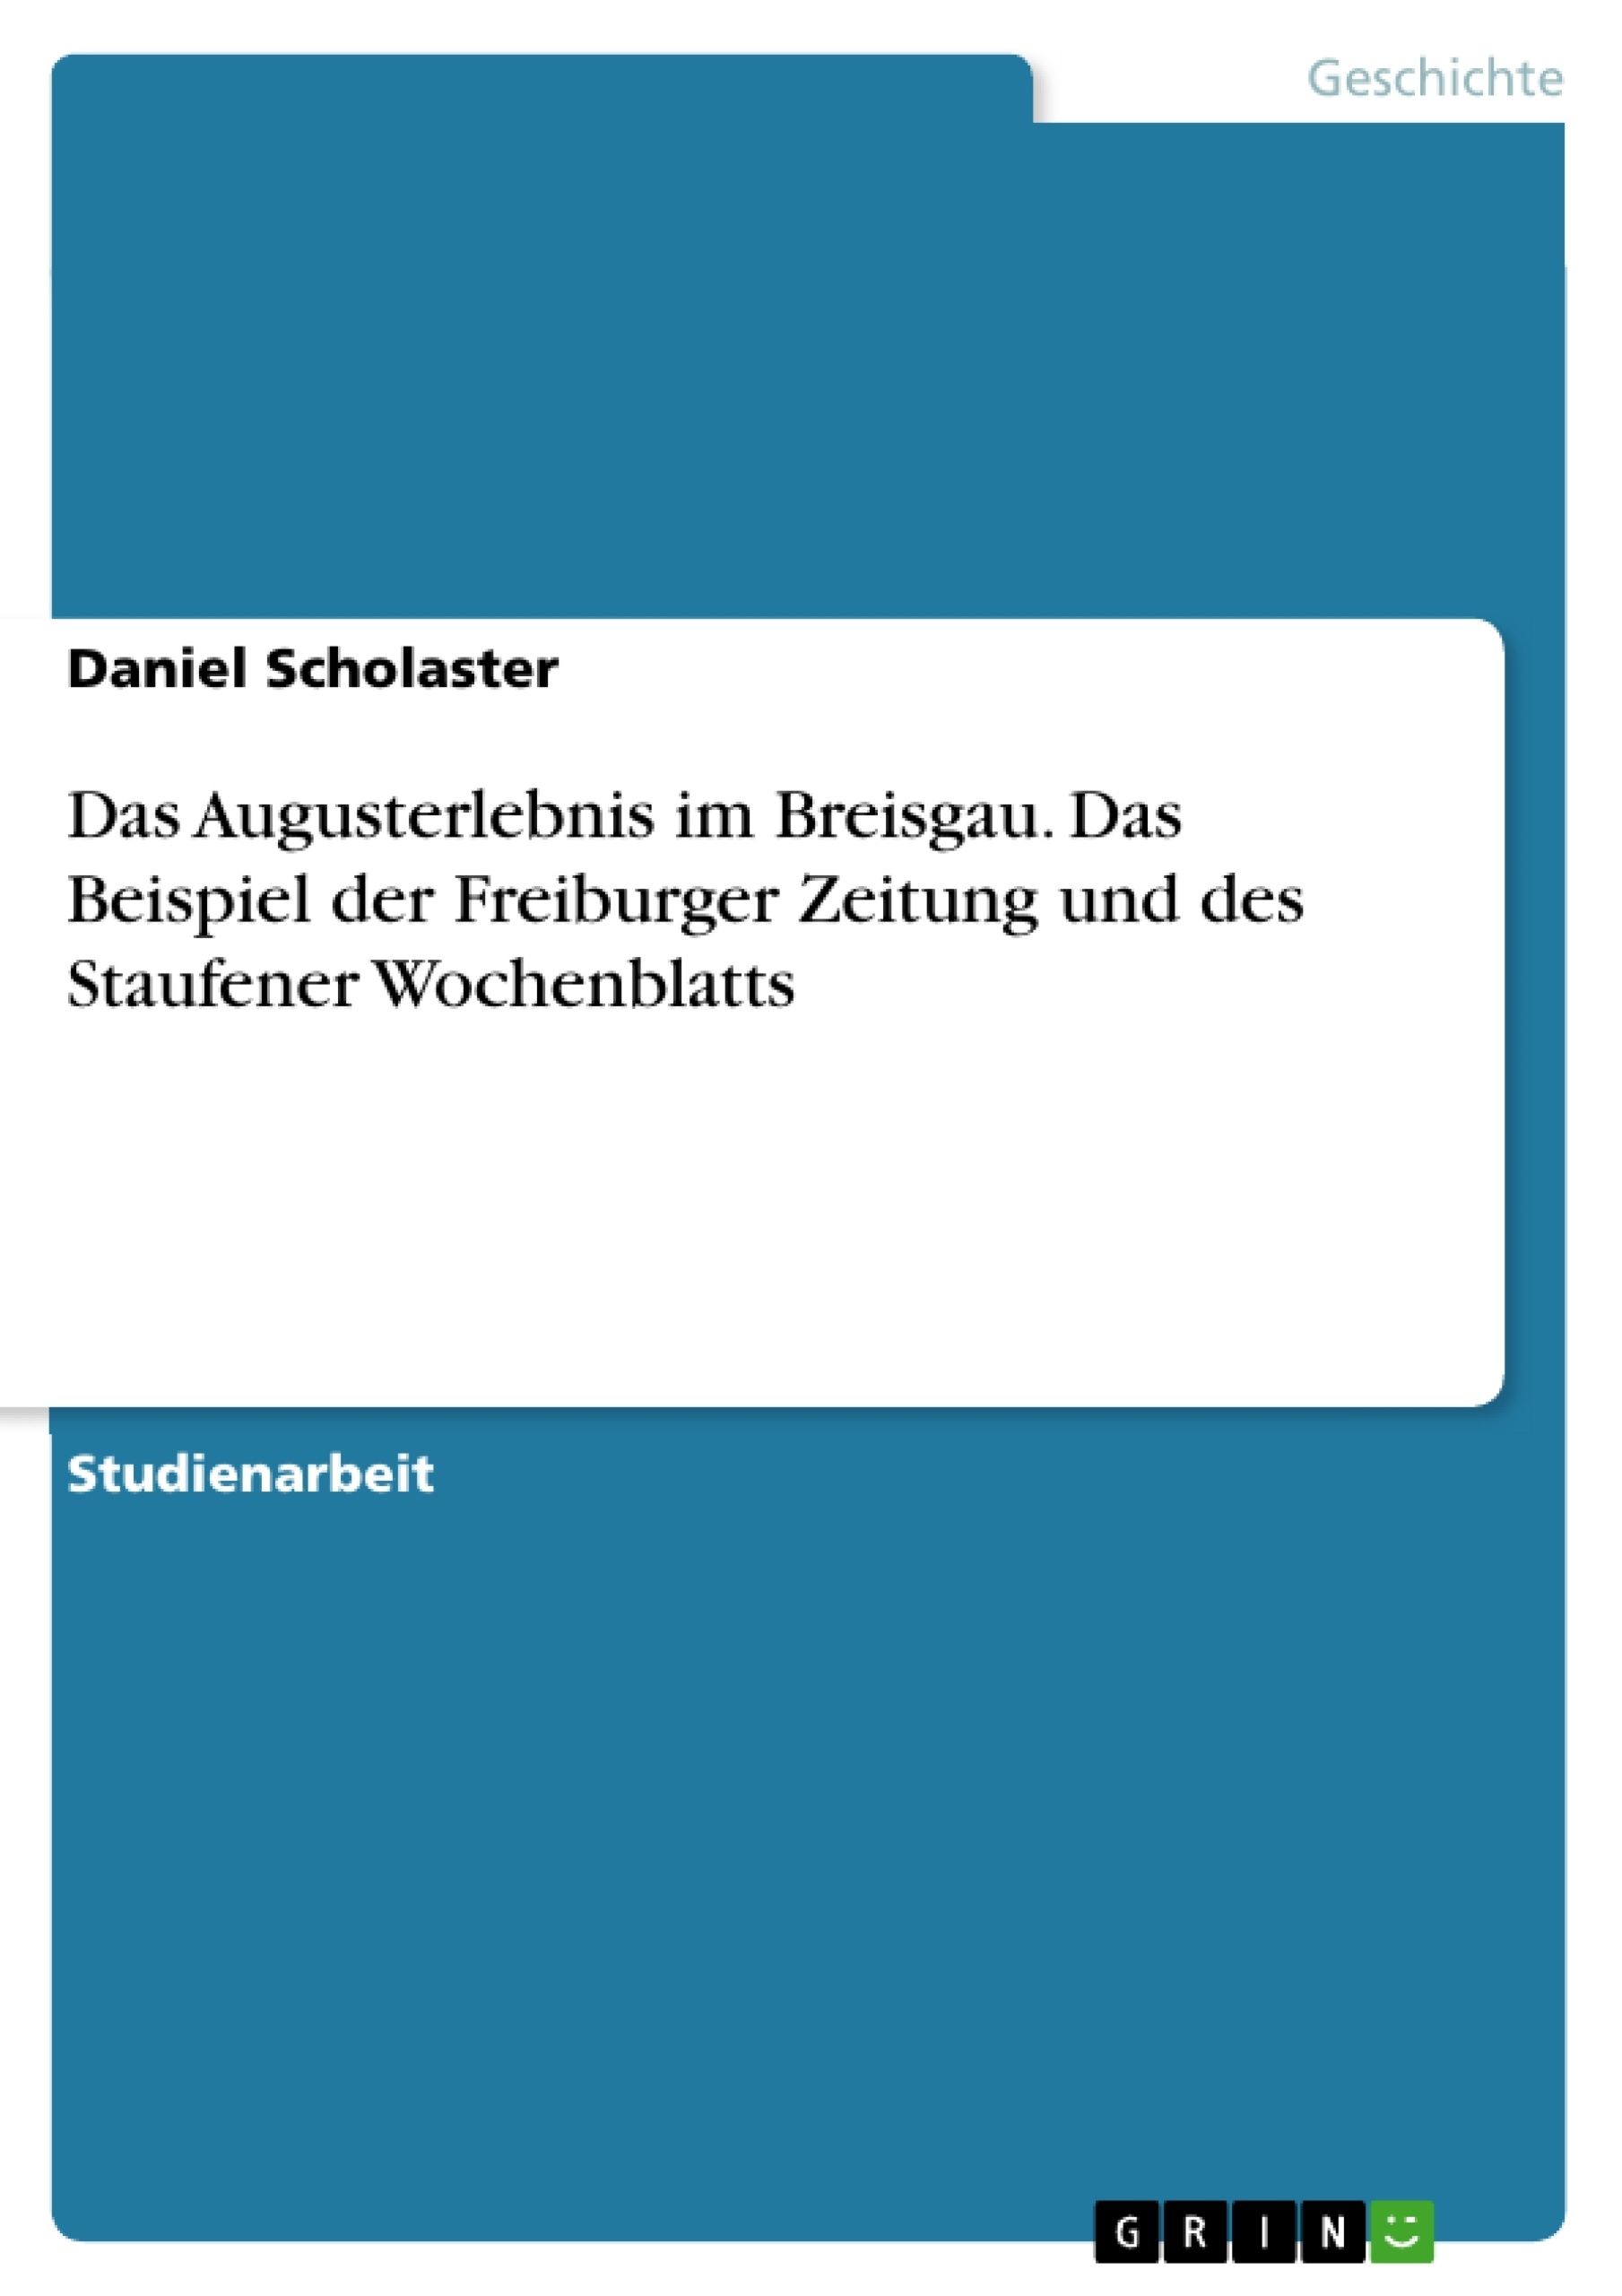 Título: Das Augusterlebnis im Breisgau. Das Beispiel der Freiburger Zeitung und des Staufener Wochenblatts